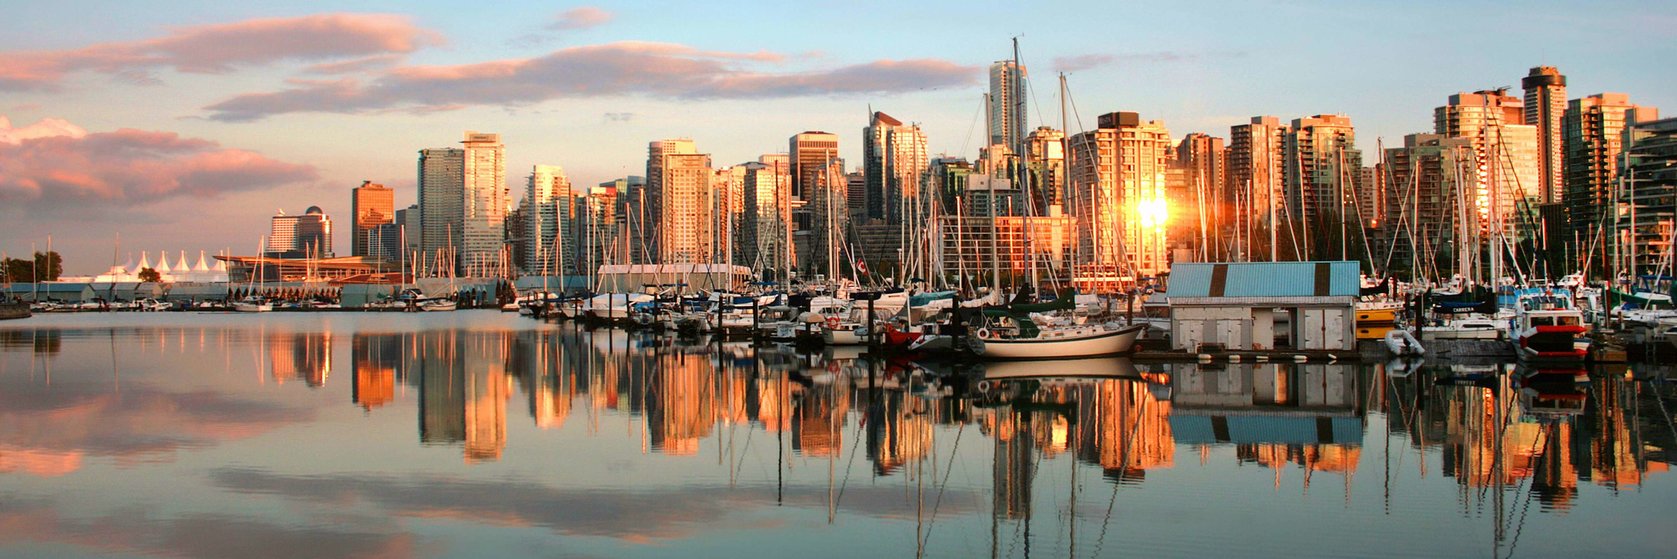 Hotely Britská Kolumbie - Vancouver